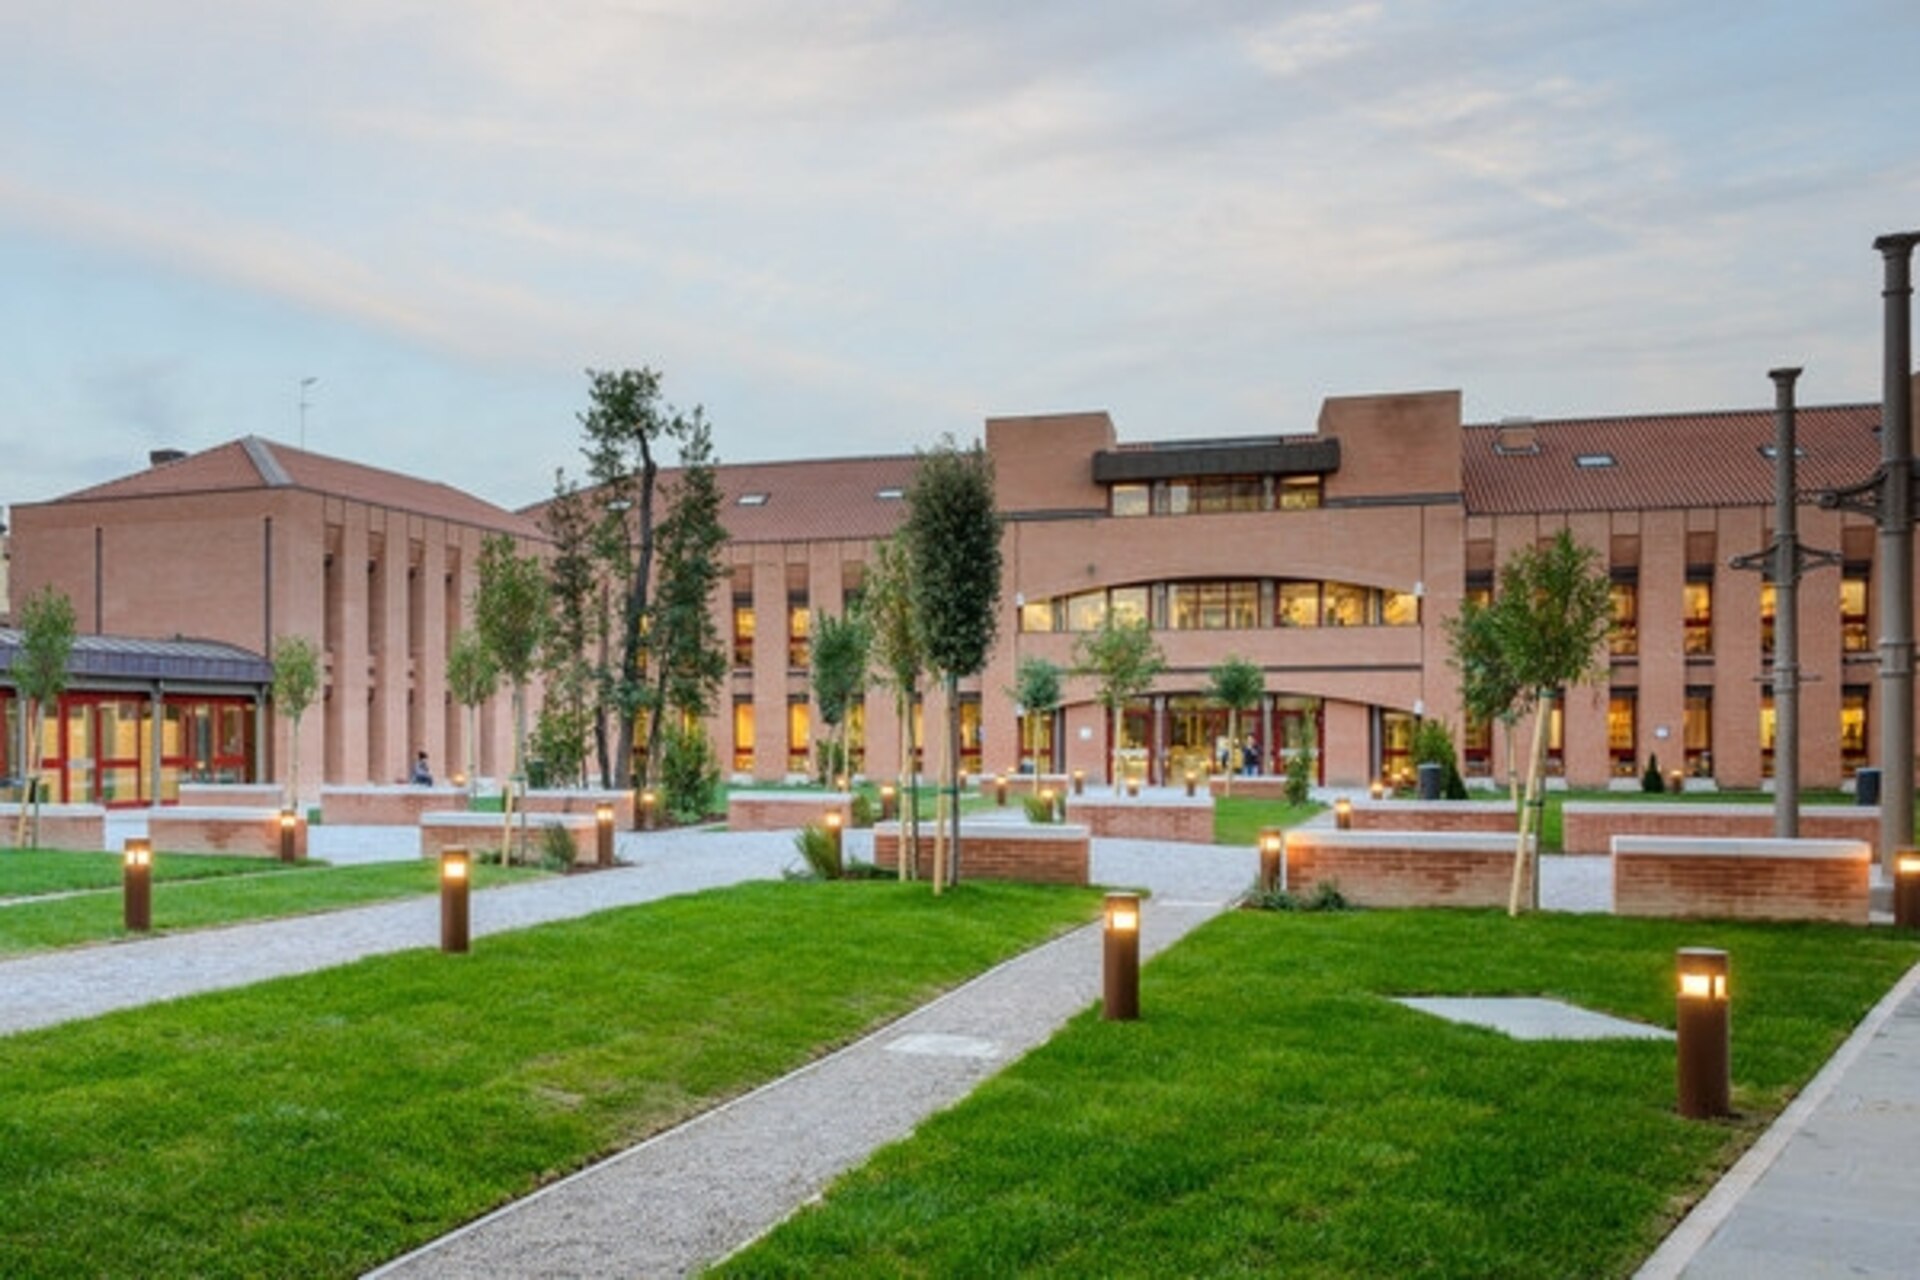 Crostacei: con l'intervento di recupero dell'area ex Mulini Passuello, nel 2014 è stato inaugurato il Campus Economico di San Giobbe, che riunifica tutte le attività dell'area di Economia dell'Università Ca’ Foscari di Venezia